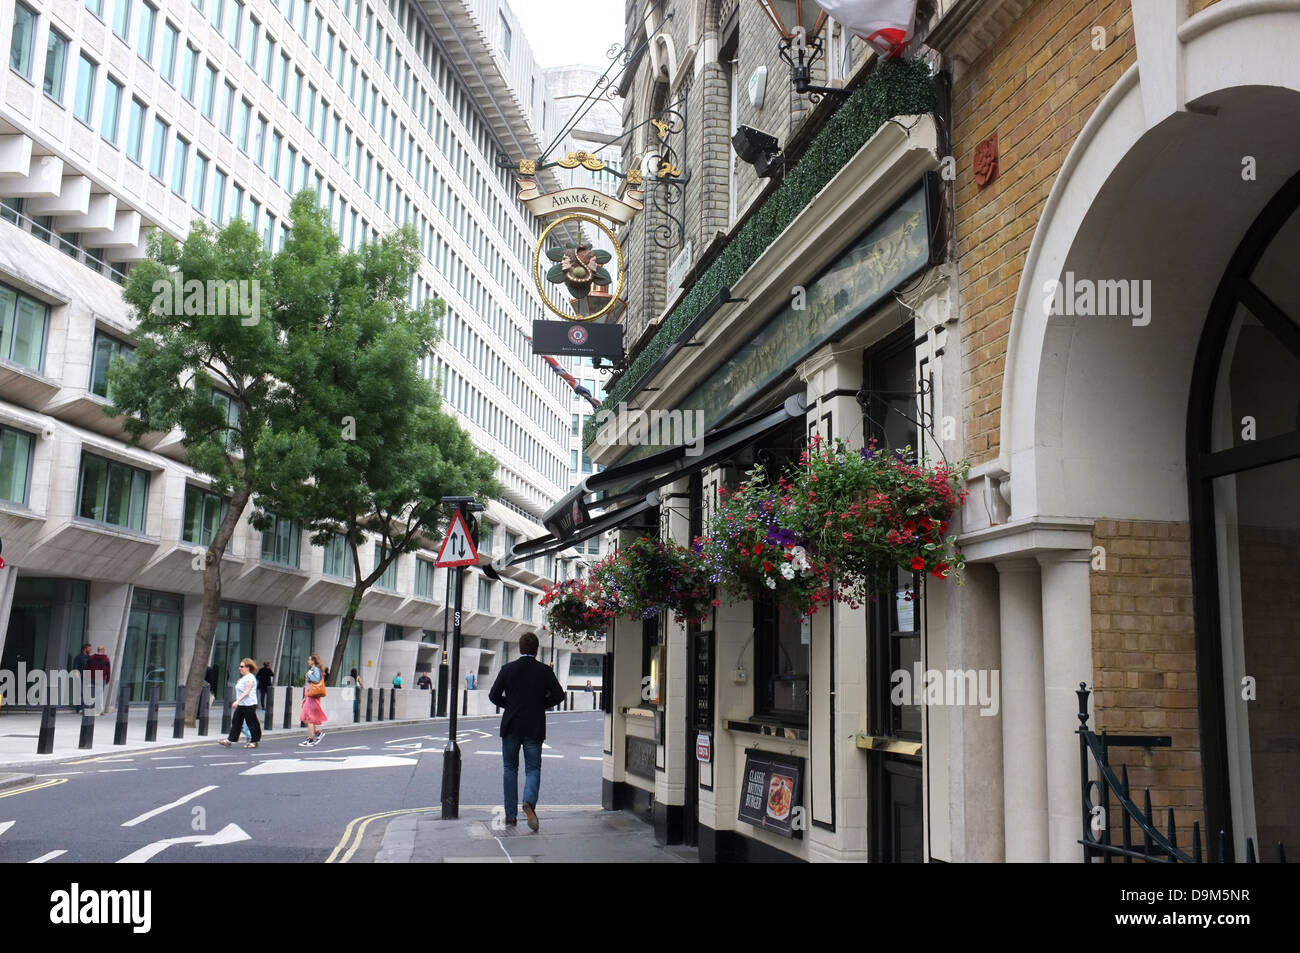 Adam et Eve tavern ville de Westminster London uk 2013 Banque D'Images